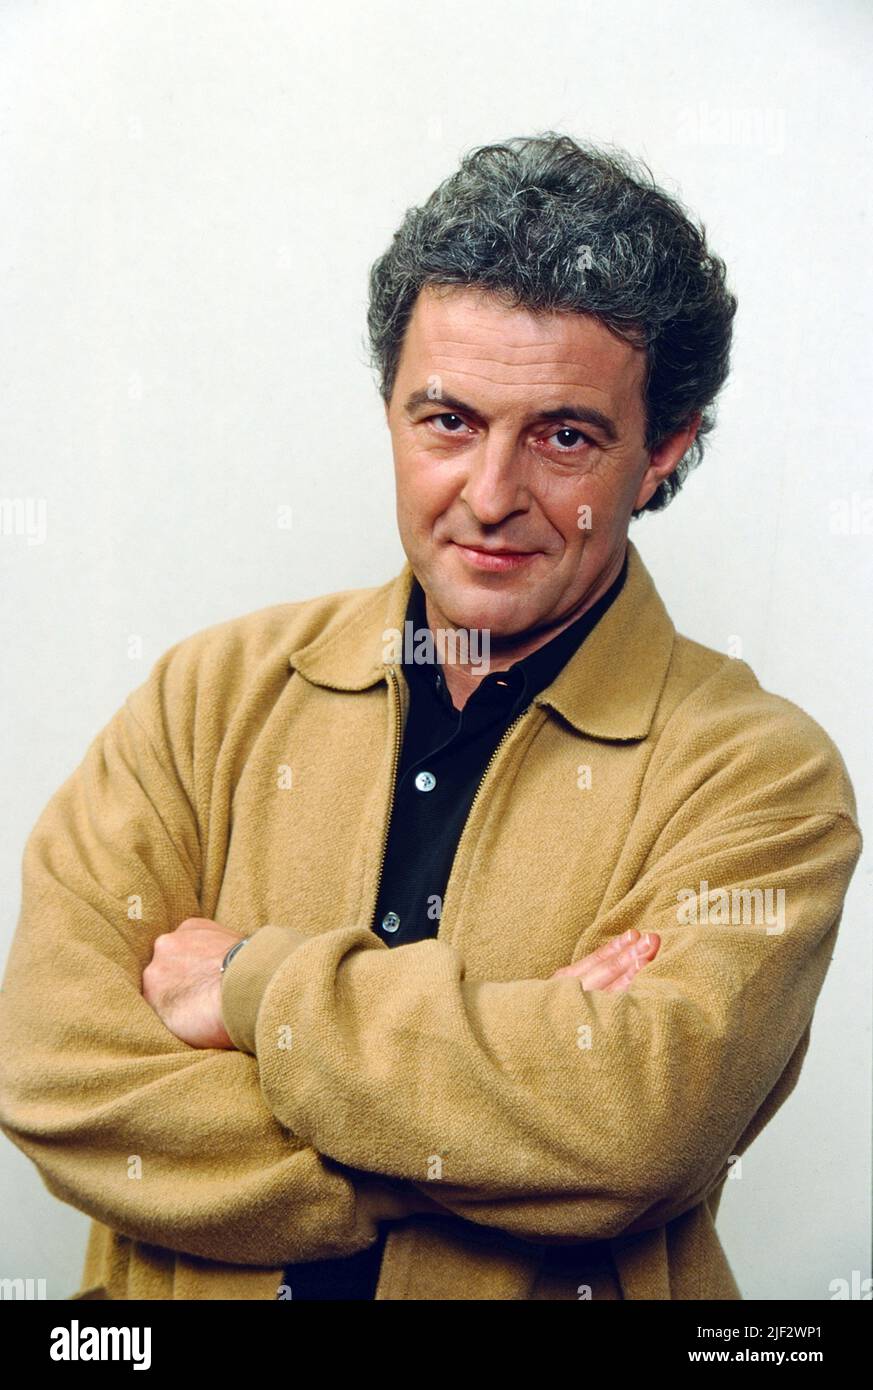 Huub Stapel, Schauspieler aus den Niederlanden, Deutschland, 1998. Huub Stapel, actor from the Netherlands, Germany, 1998. Stock Photo